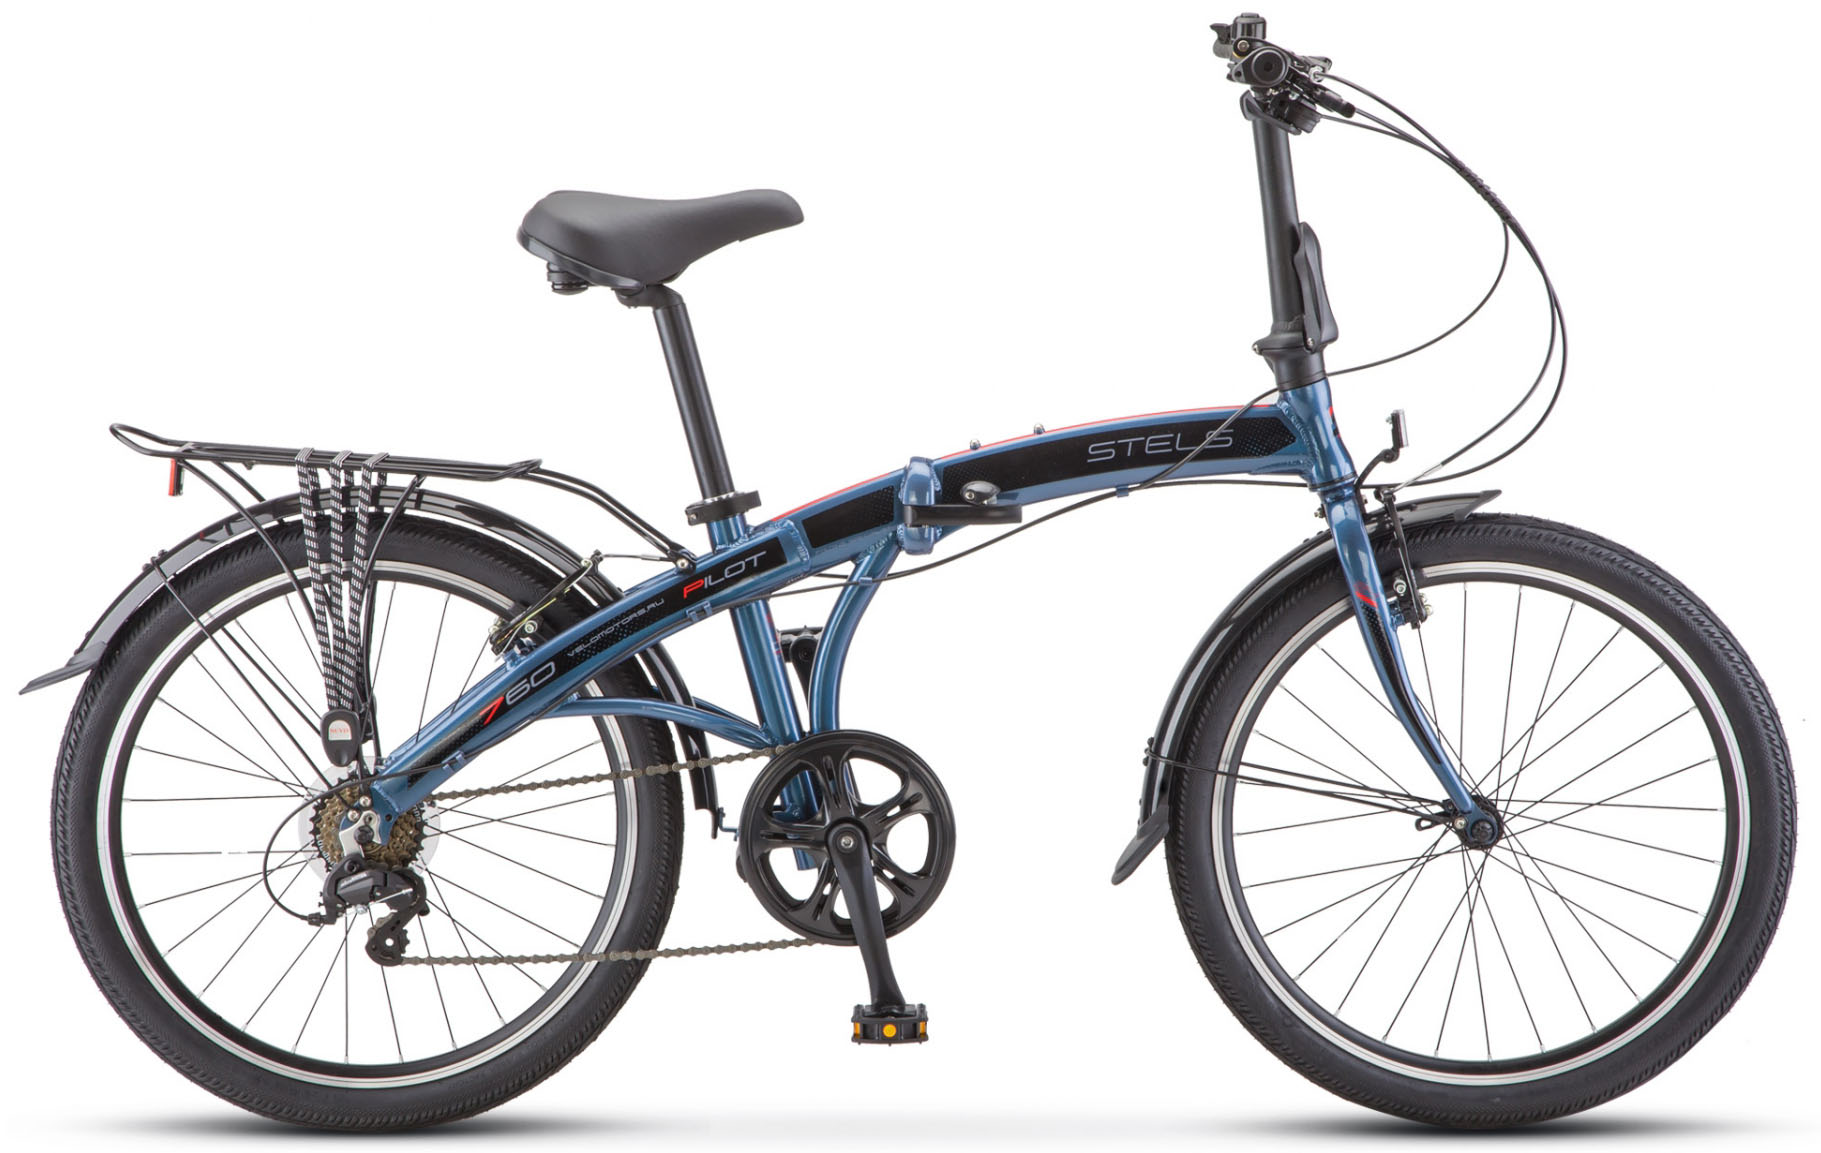  Отзывы о Складном велосипеде Stels Pilot 760 24 V010 2019